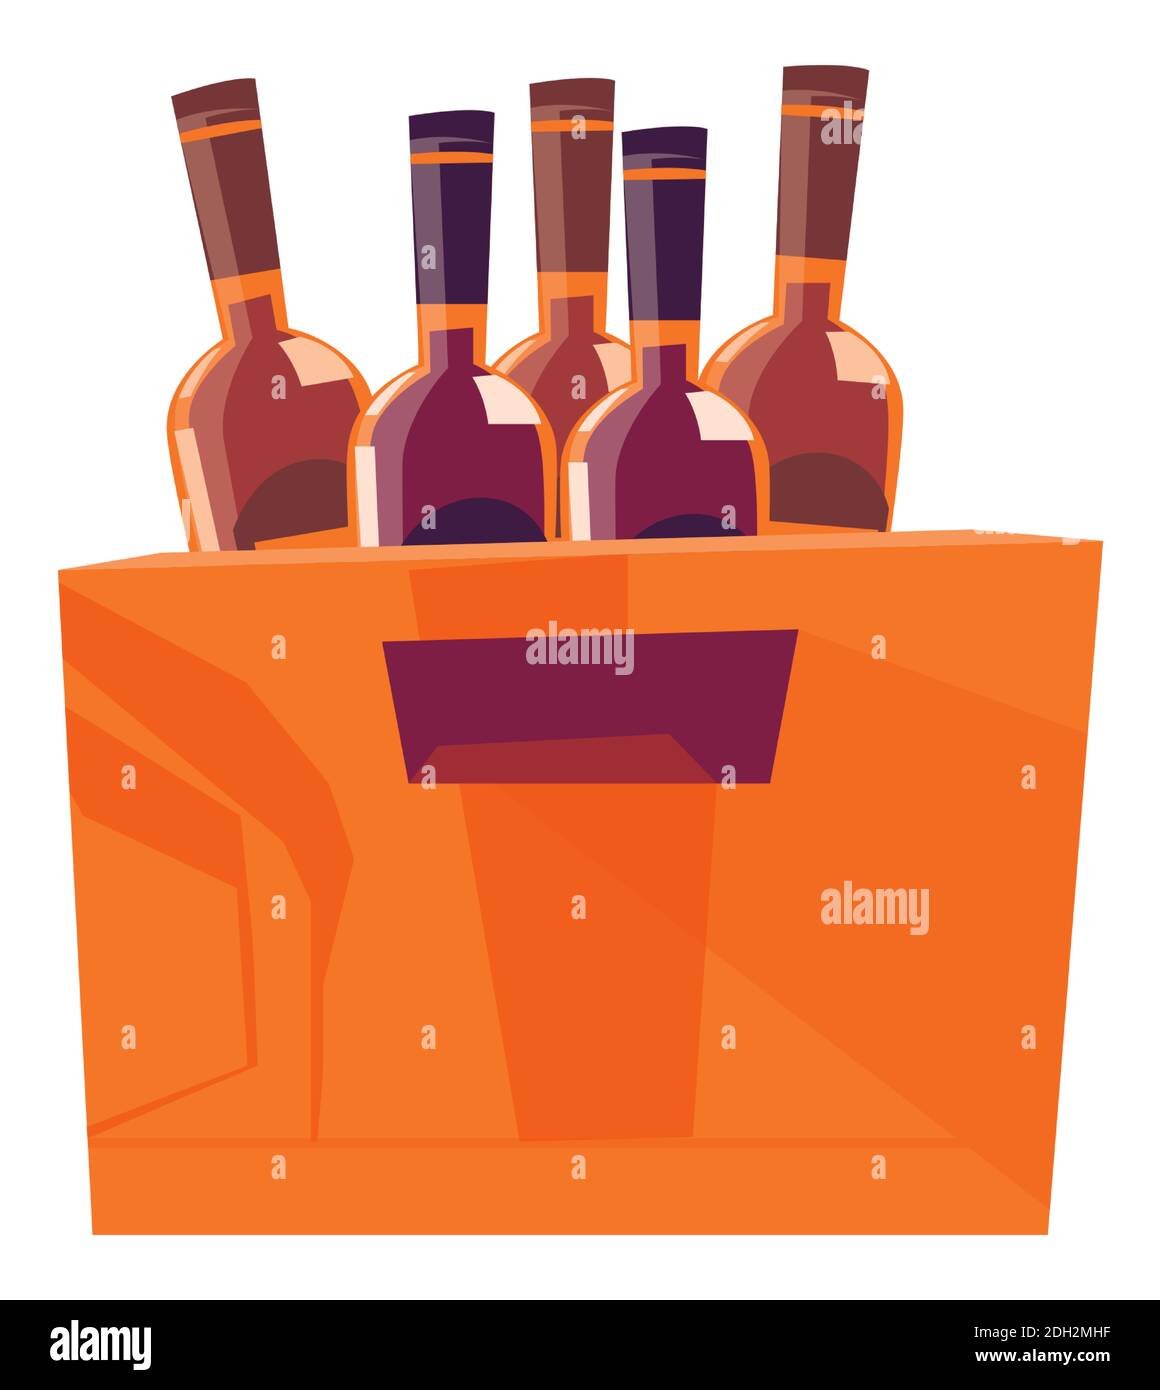 Holzkiste für Flaschen mit alkoholischen Getränken, Verpackung für die Lagerung und Lieferung von Getränken Cartoon-Vektor-Illustration Stock Vektor